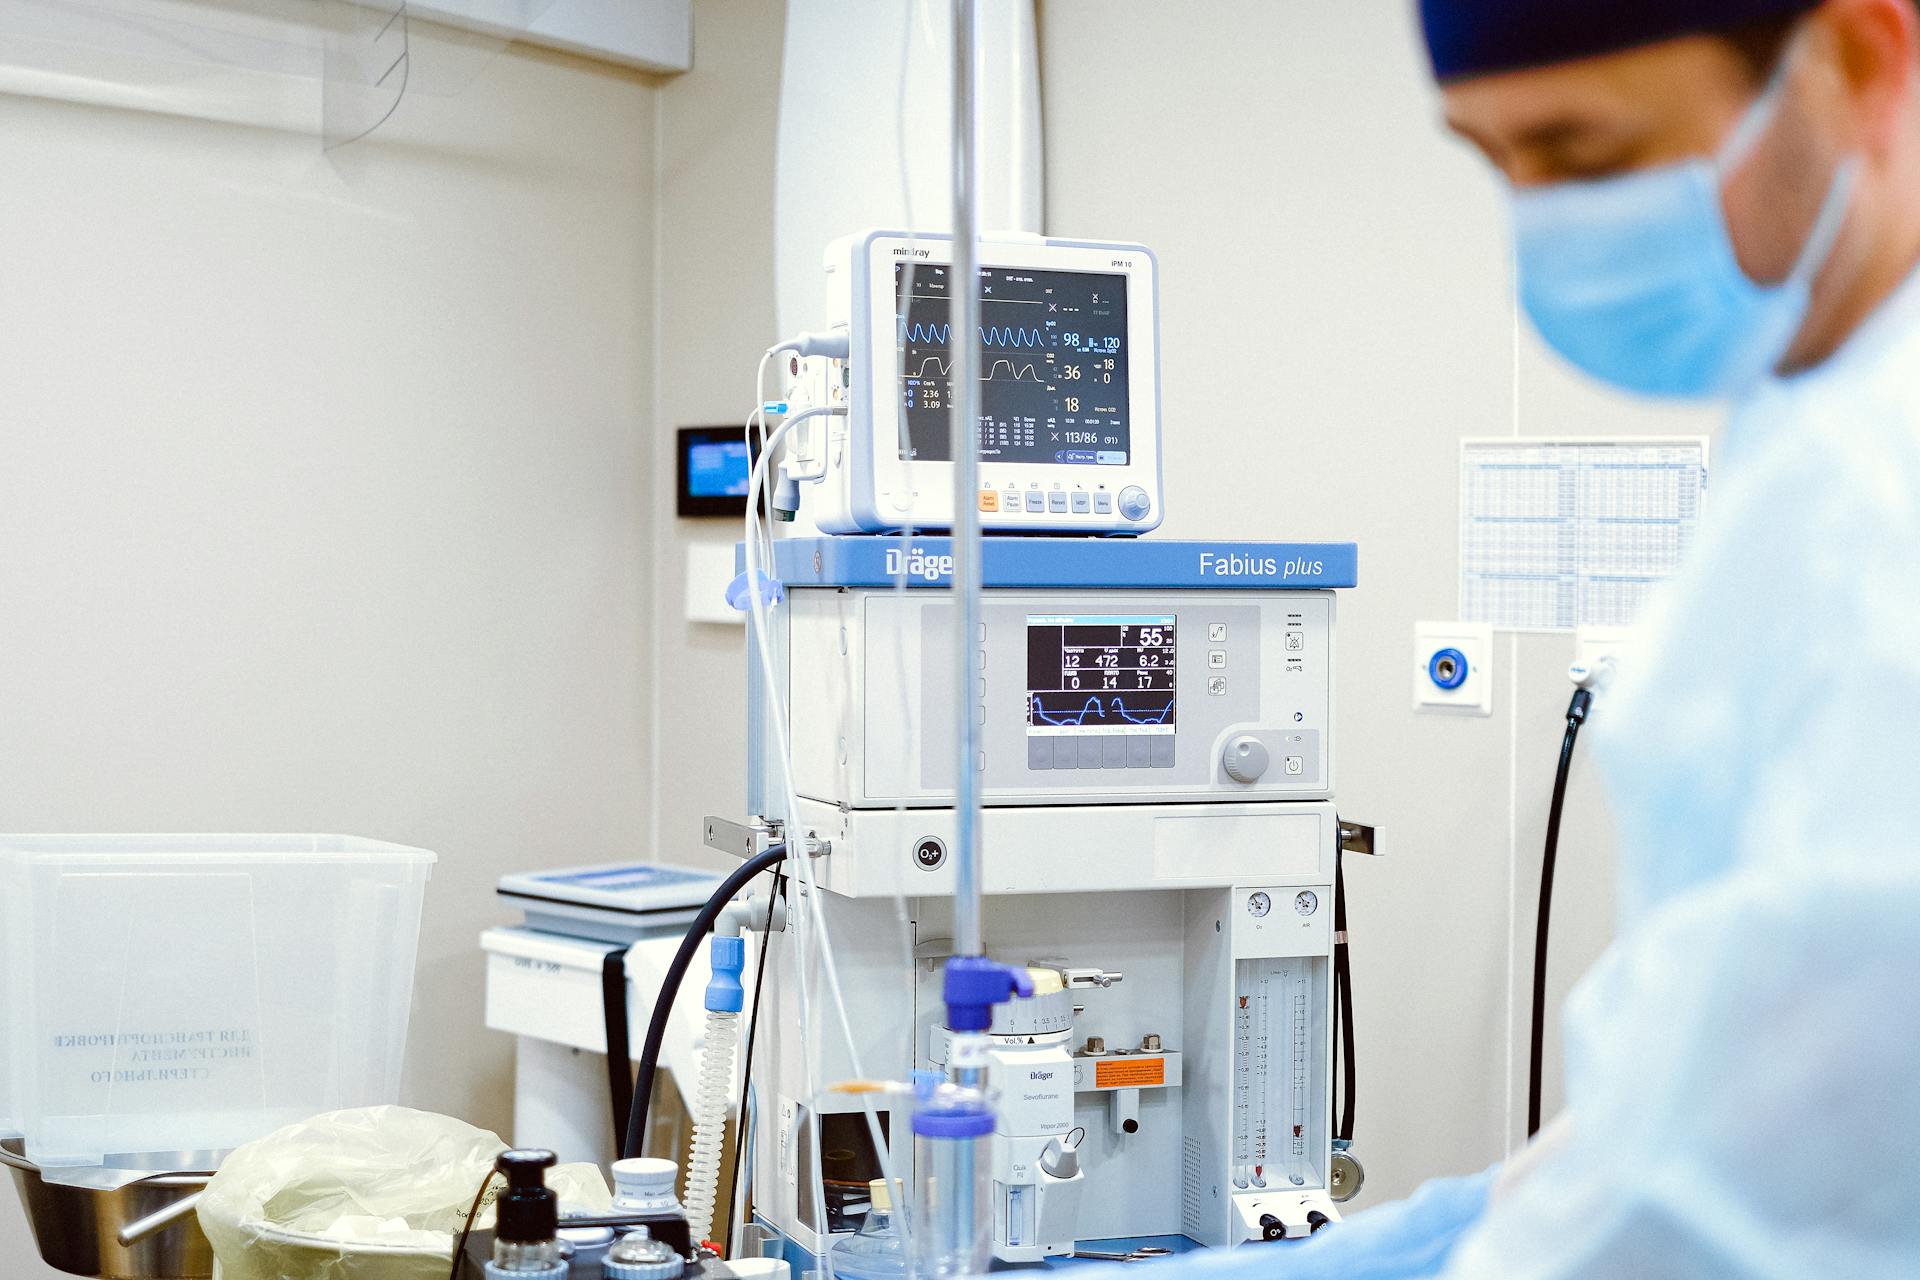 Eine medizinische Fachkraft trägt einen Mundschutz, während sie in einem Operationssaal steht | Quelle: Pexels